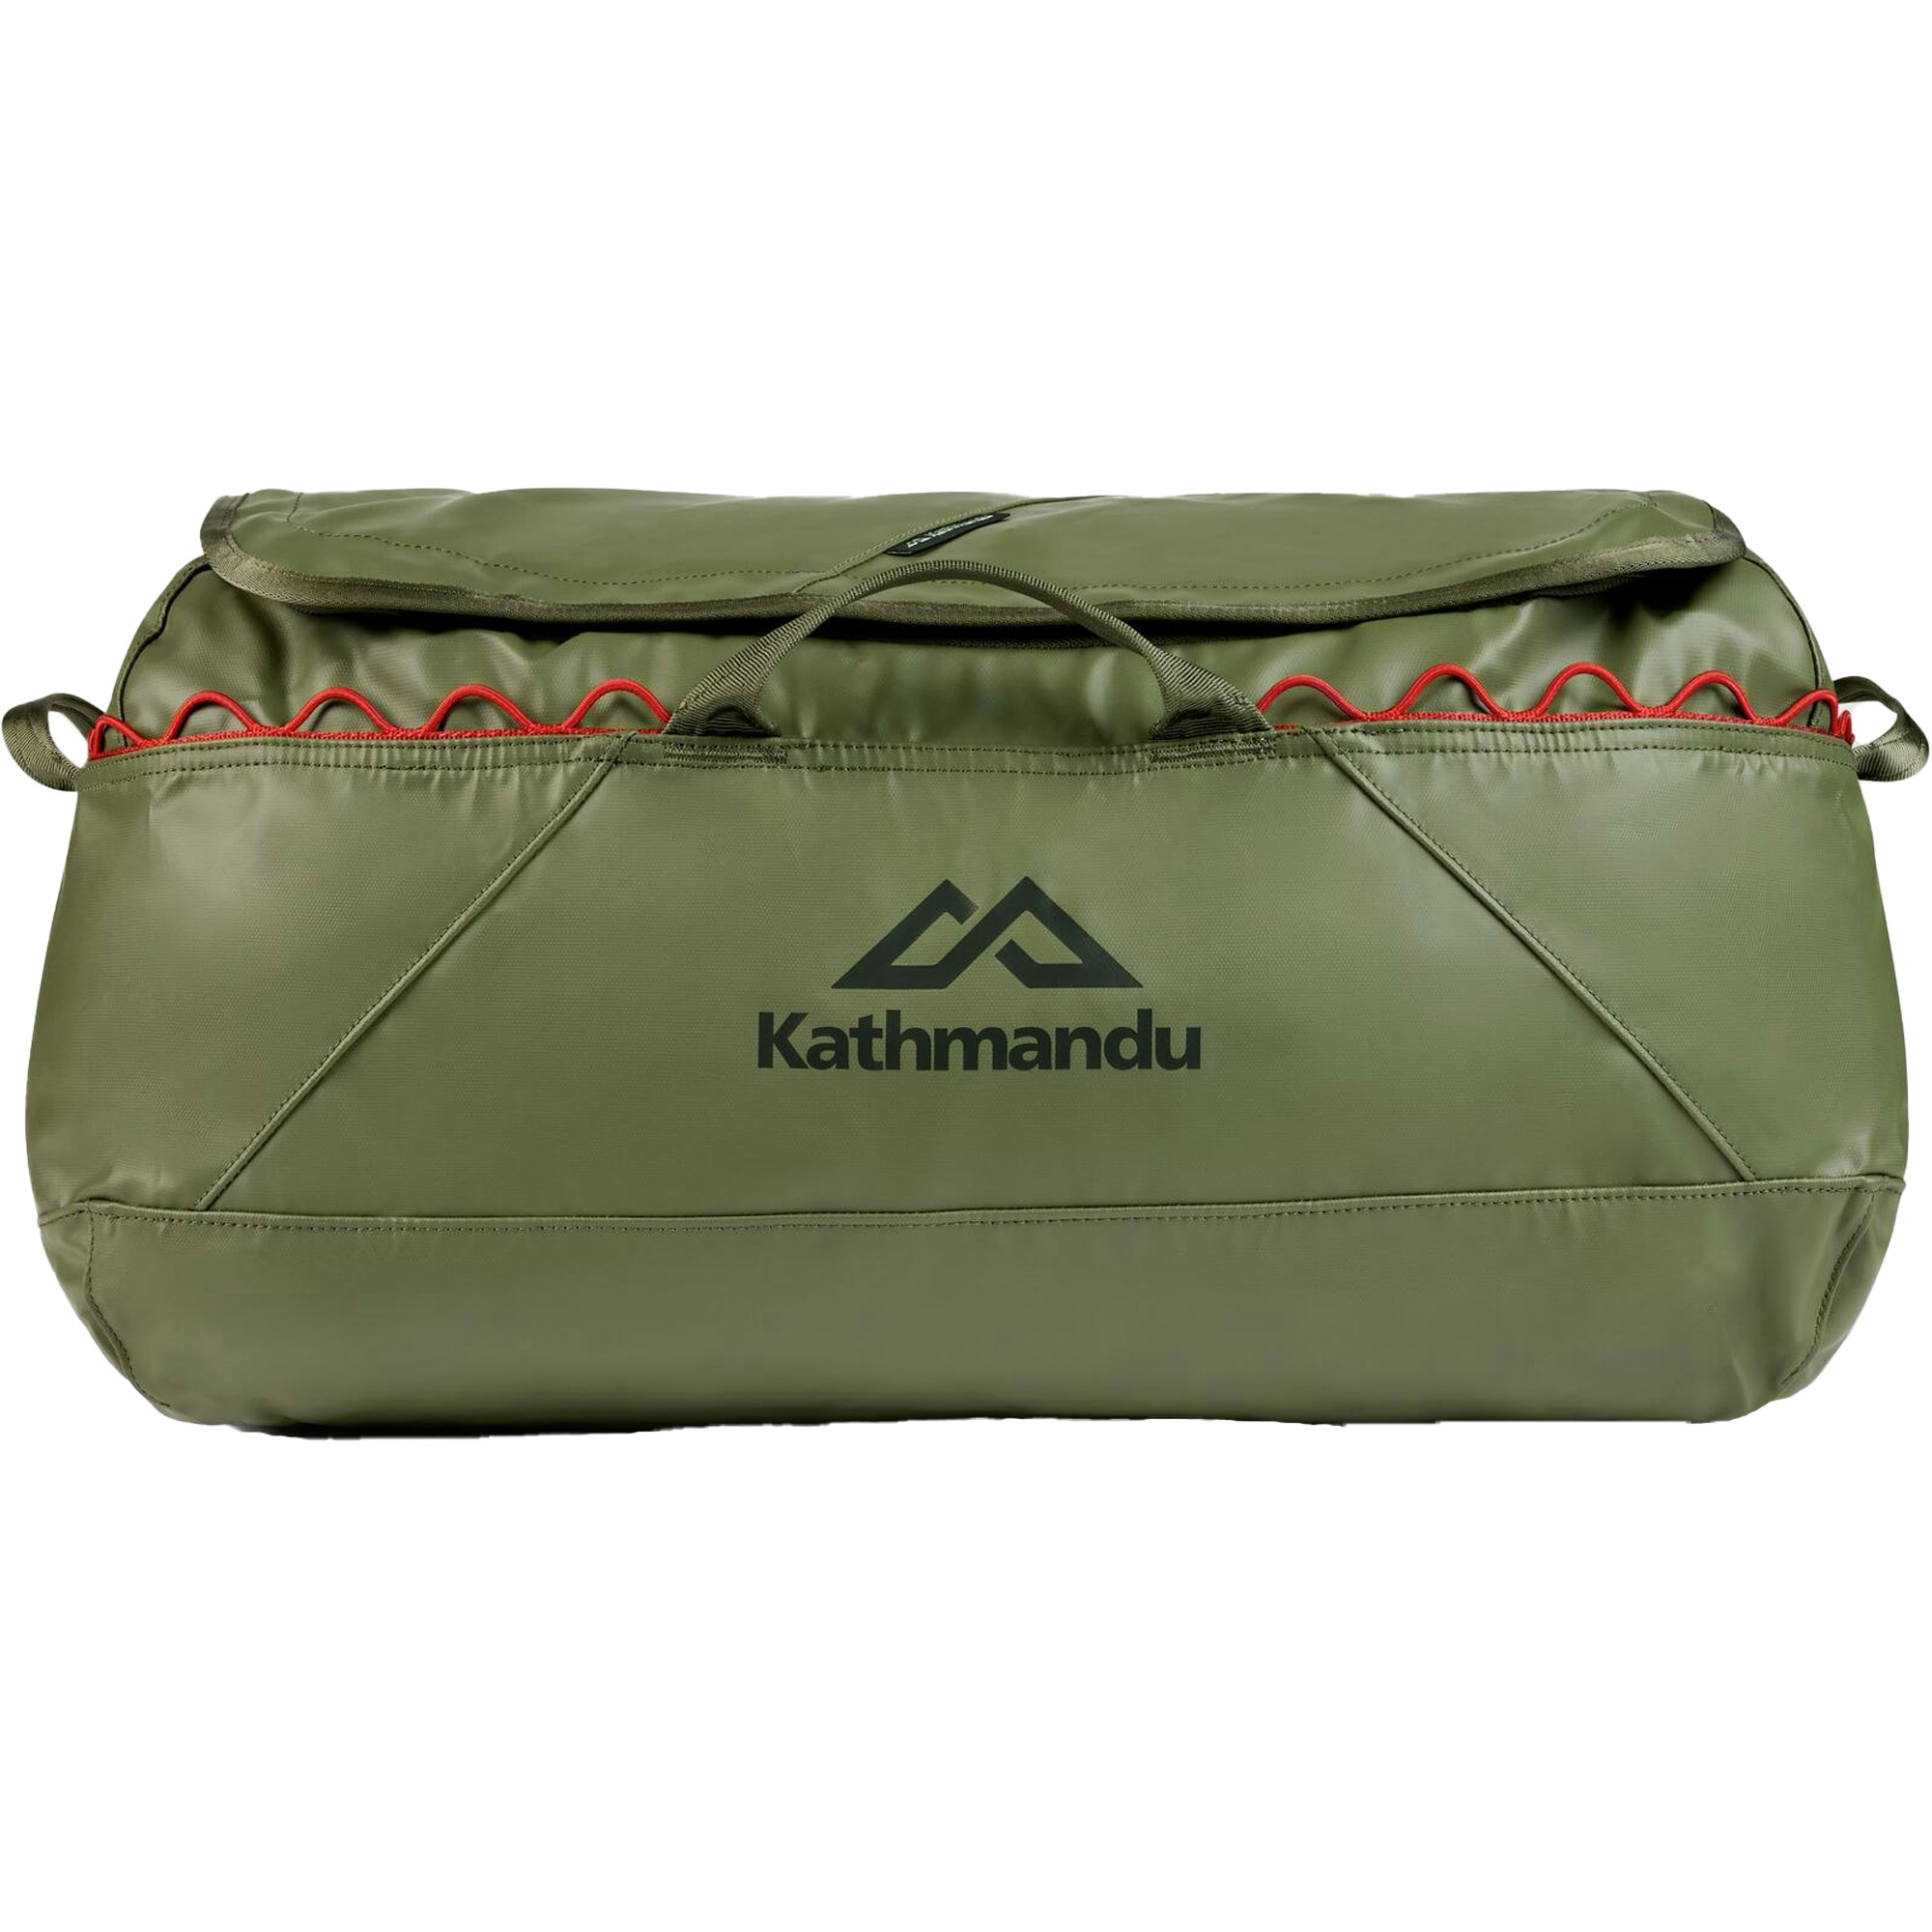 Kathmandu Indus 50 Waterproof Duffel Bag